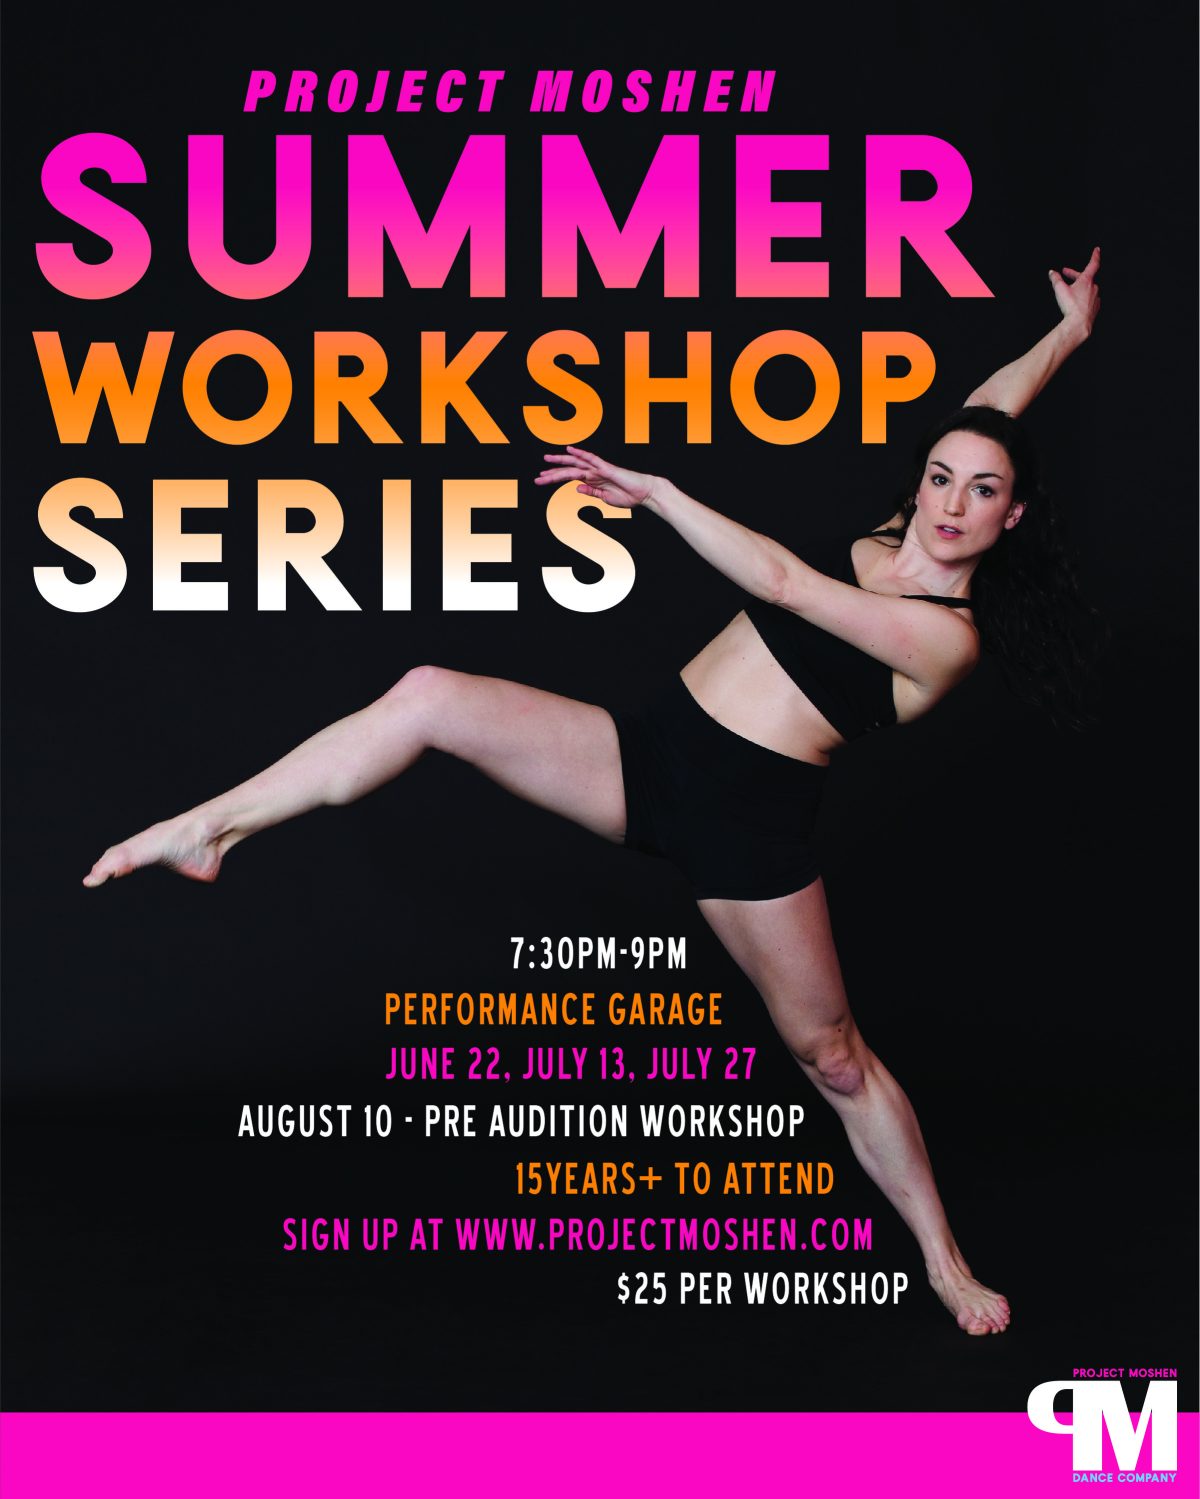 Project Moshen Summer Workshop 1